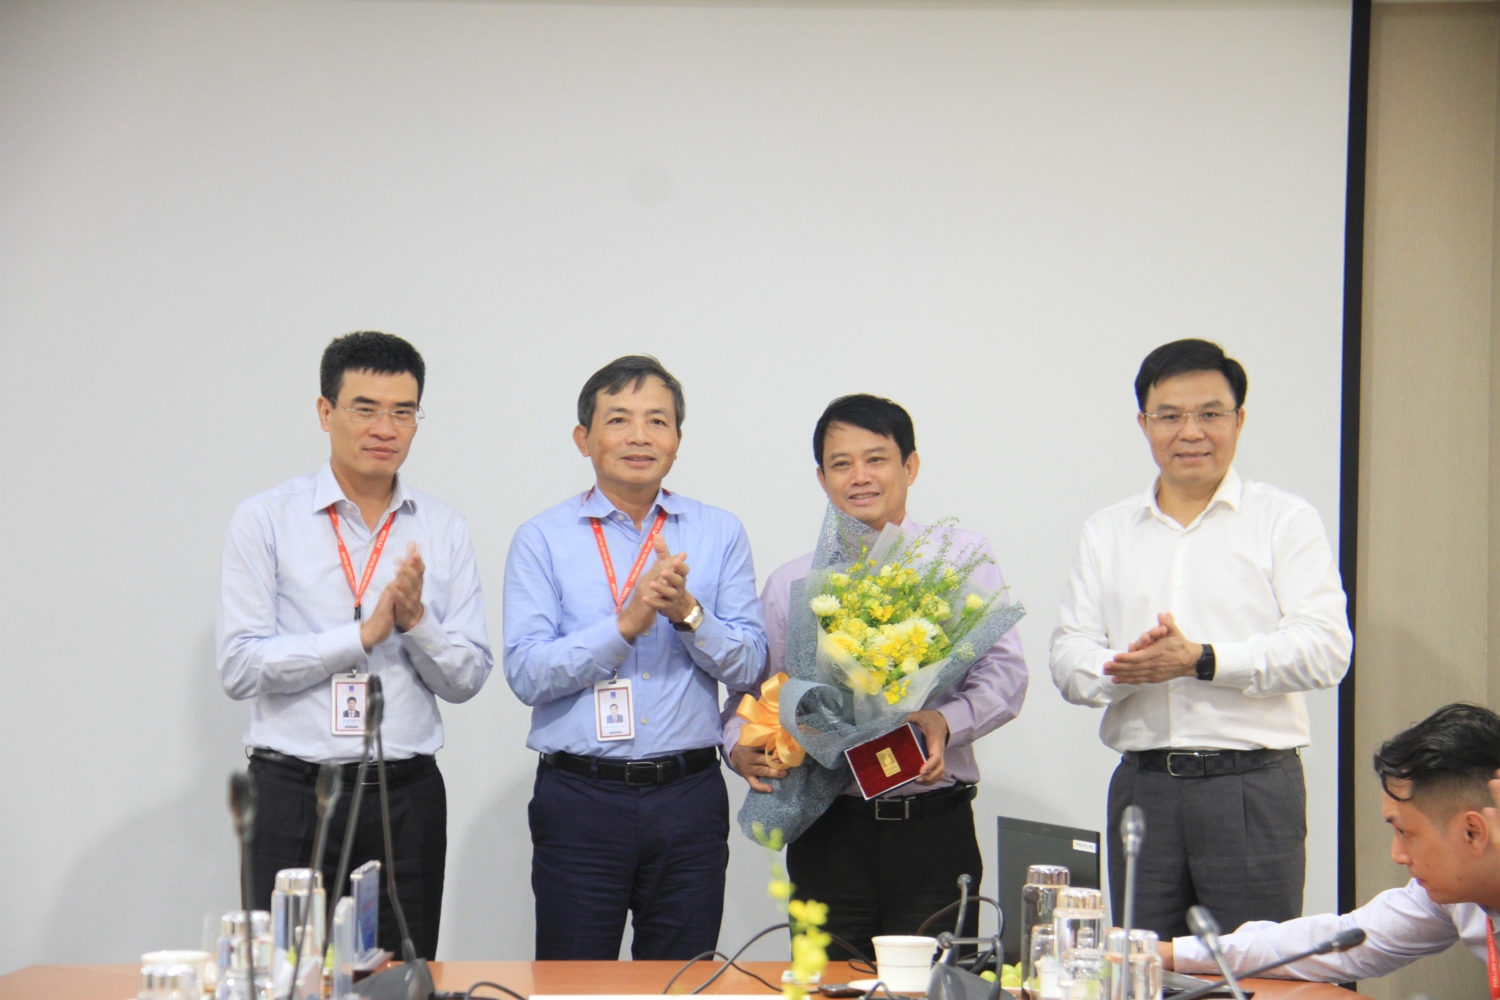 Nhân dịp này, với sự chứng kiến của Tổng giám đốc PVN Lê Mạnh Hùng, lãnh đạo PV GAS đã tặng hoa tri ân những đóng góp của Trưởng ban Thương mại Dịch vụ PVN Nguyễn Mậu Dũng, nguyên Phó Tổng giám đốc PV GAS